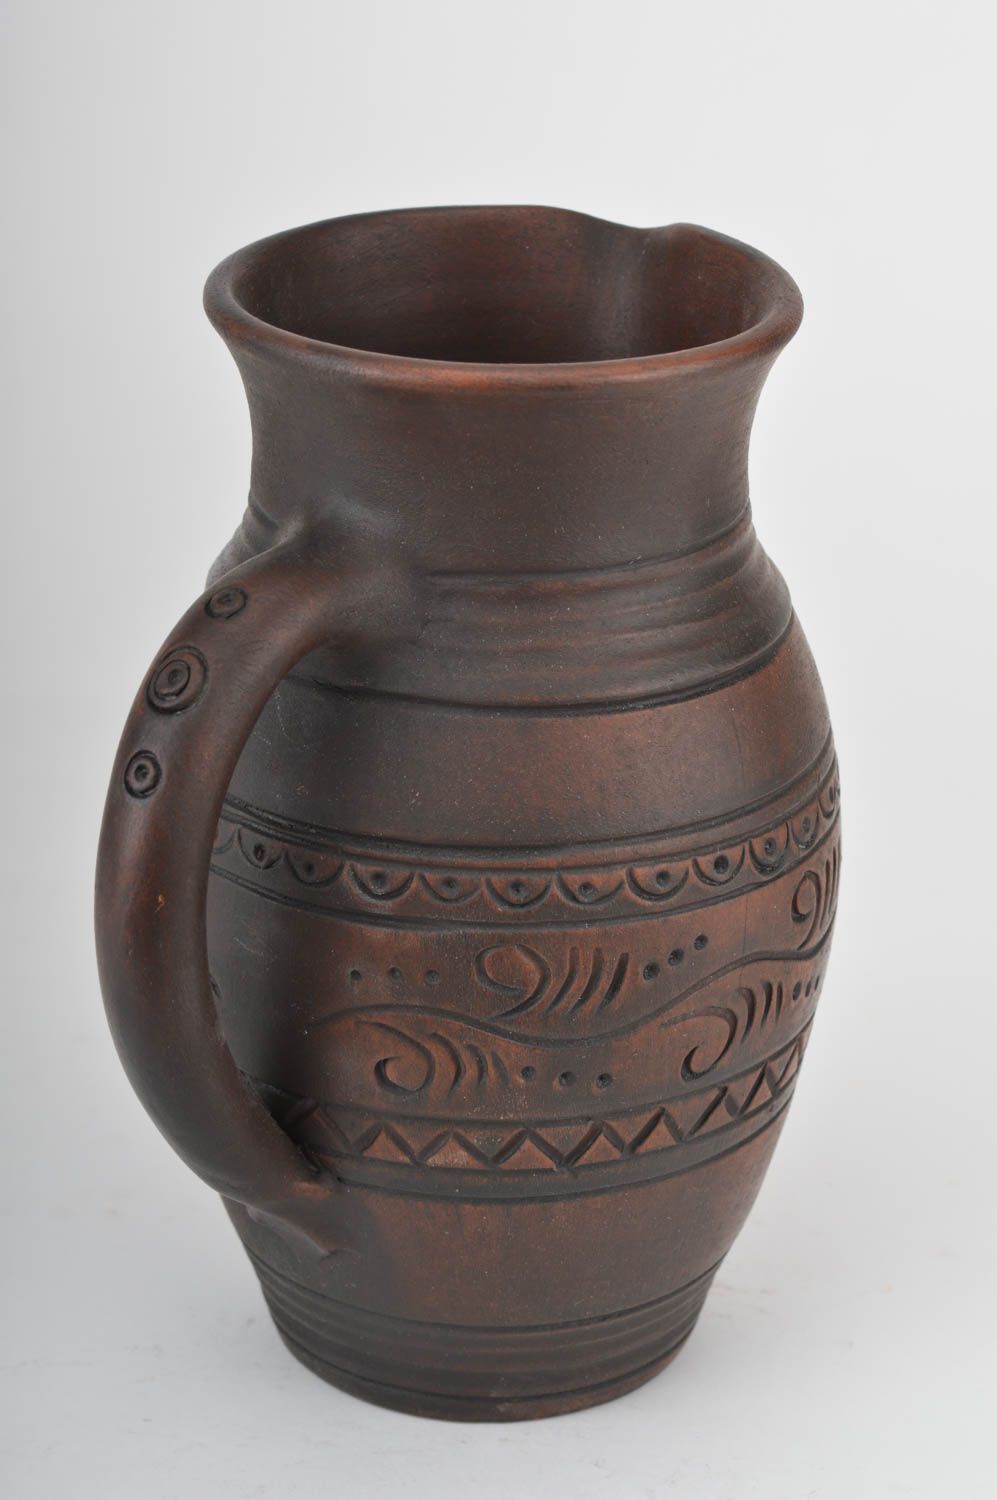 Belle cruche céramique grande faite main 1.7 litre marron écologique ornementée photo 5